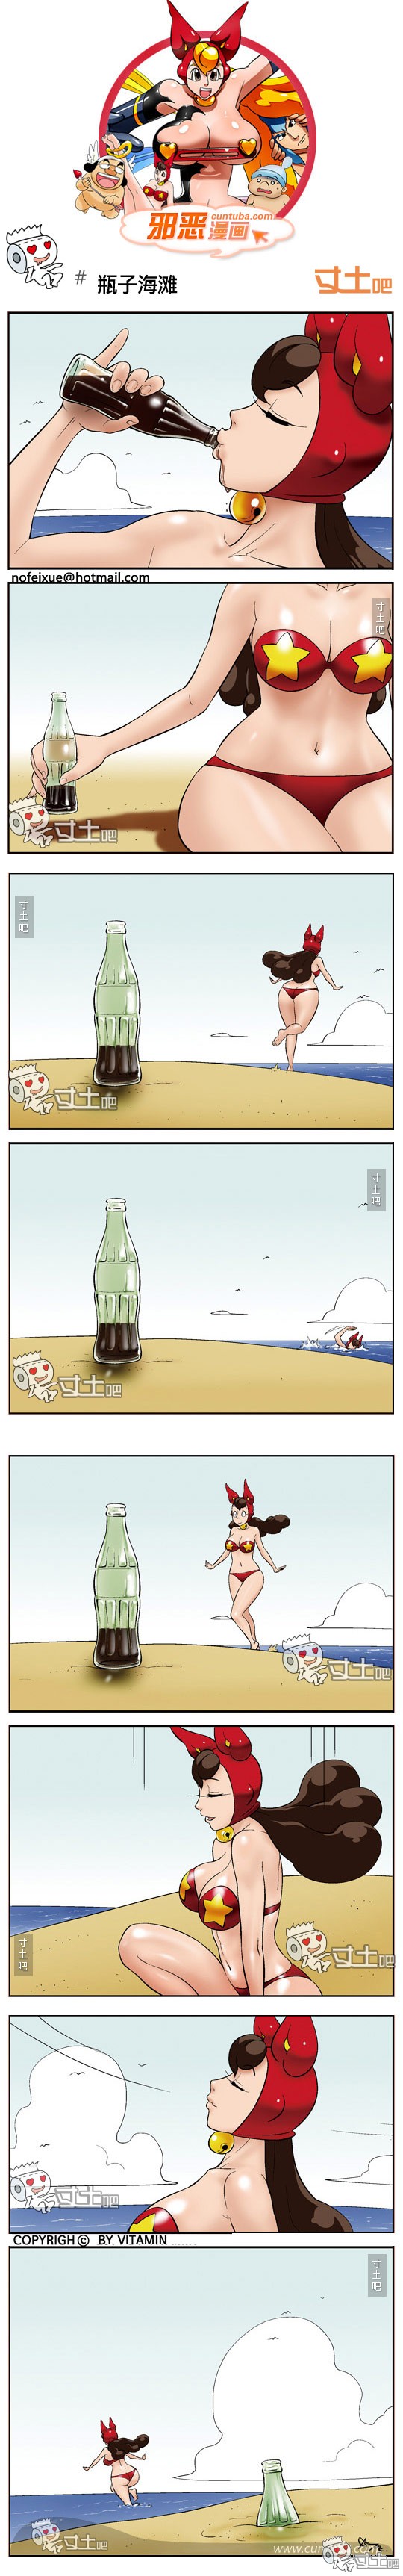 邪恶漫画大全瓶子海滩